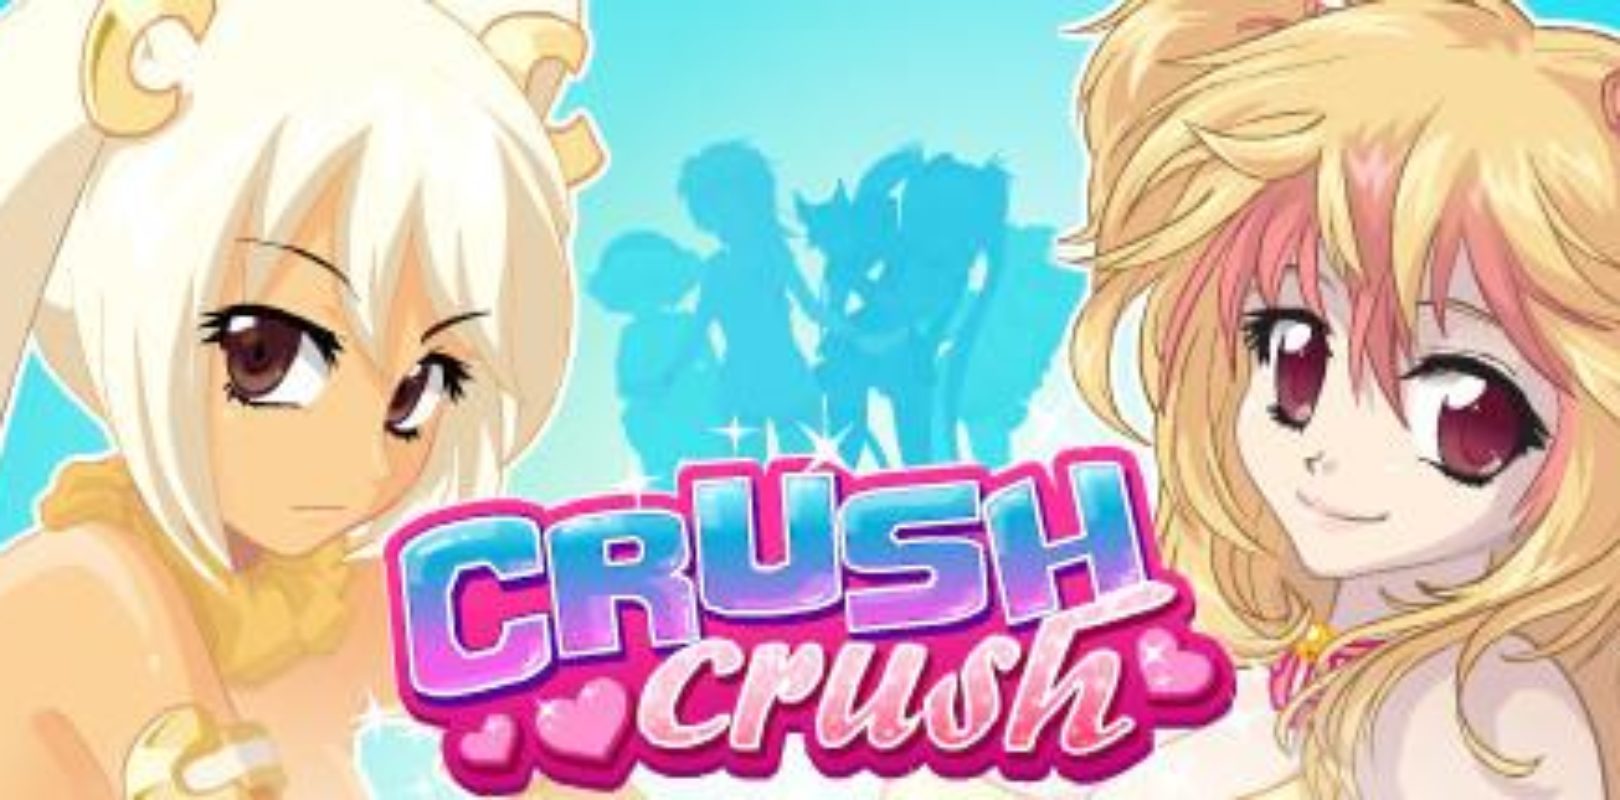 crush crush coupon codes 2020